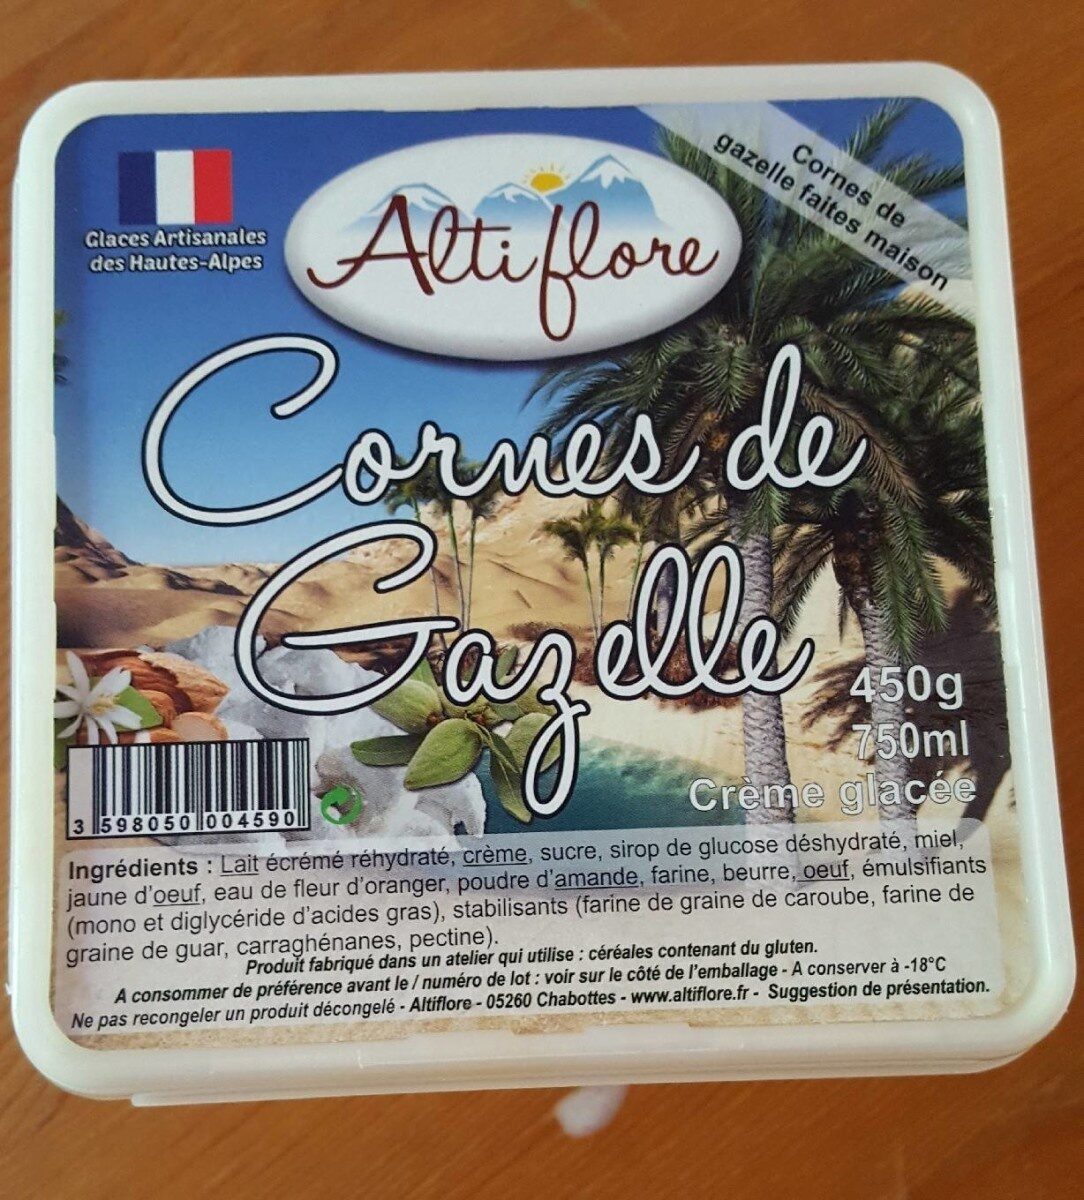 Crème glacée Cornes de Gazelle - Produit - fr